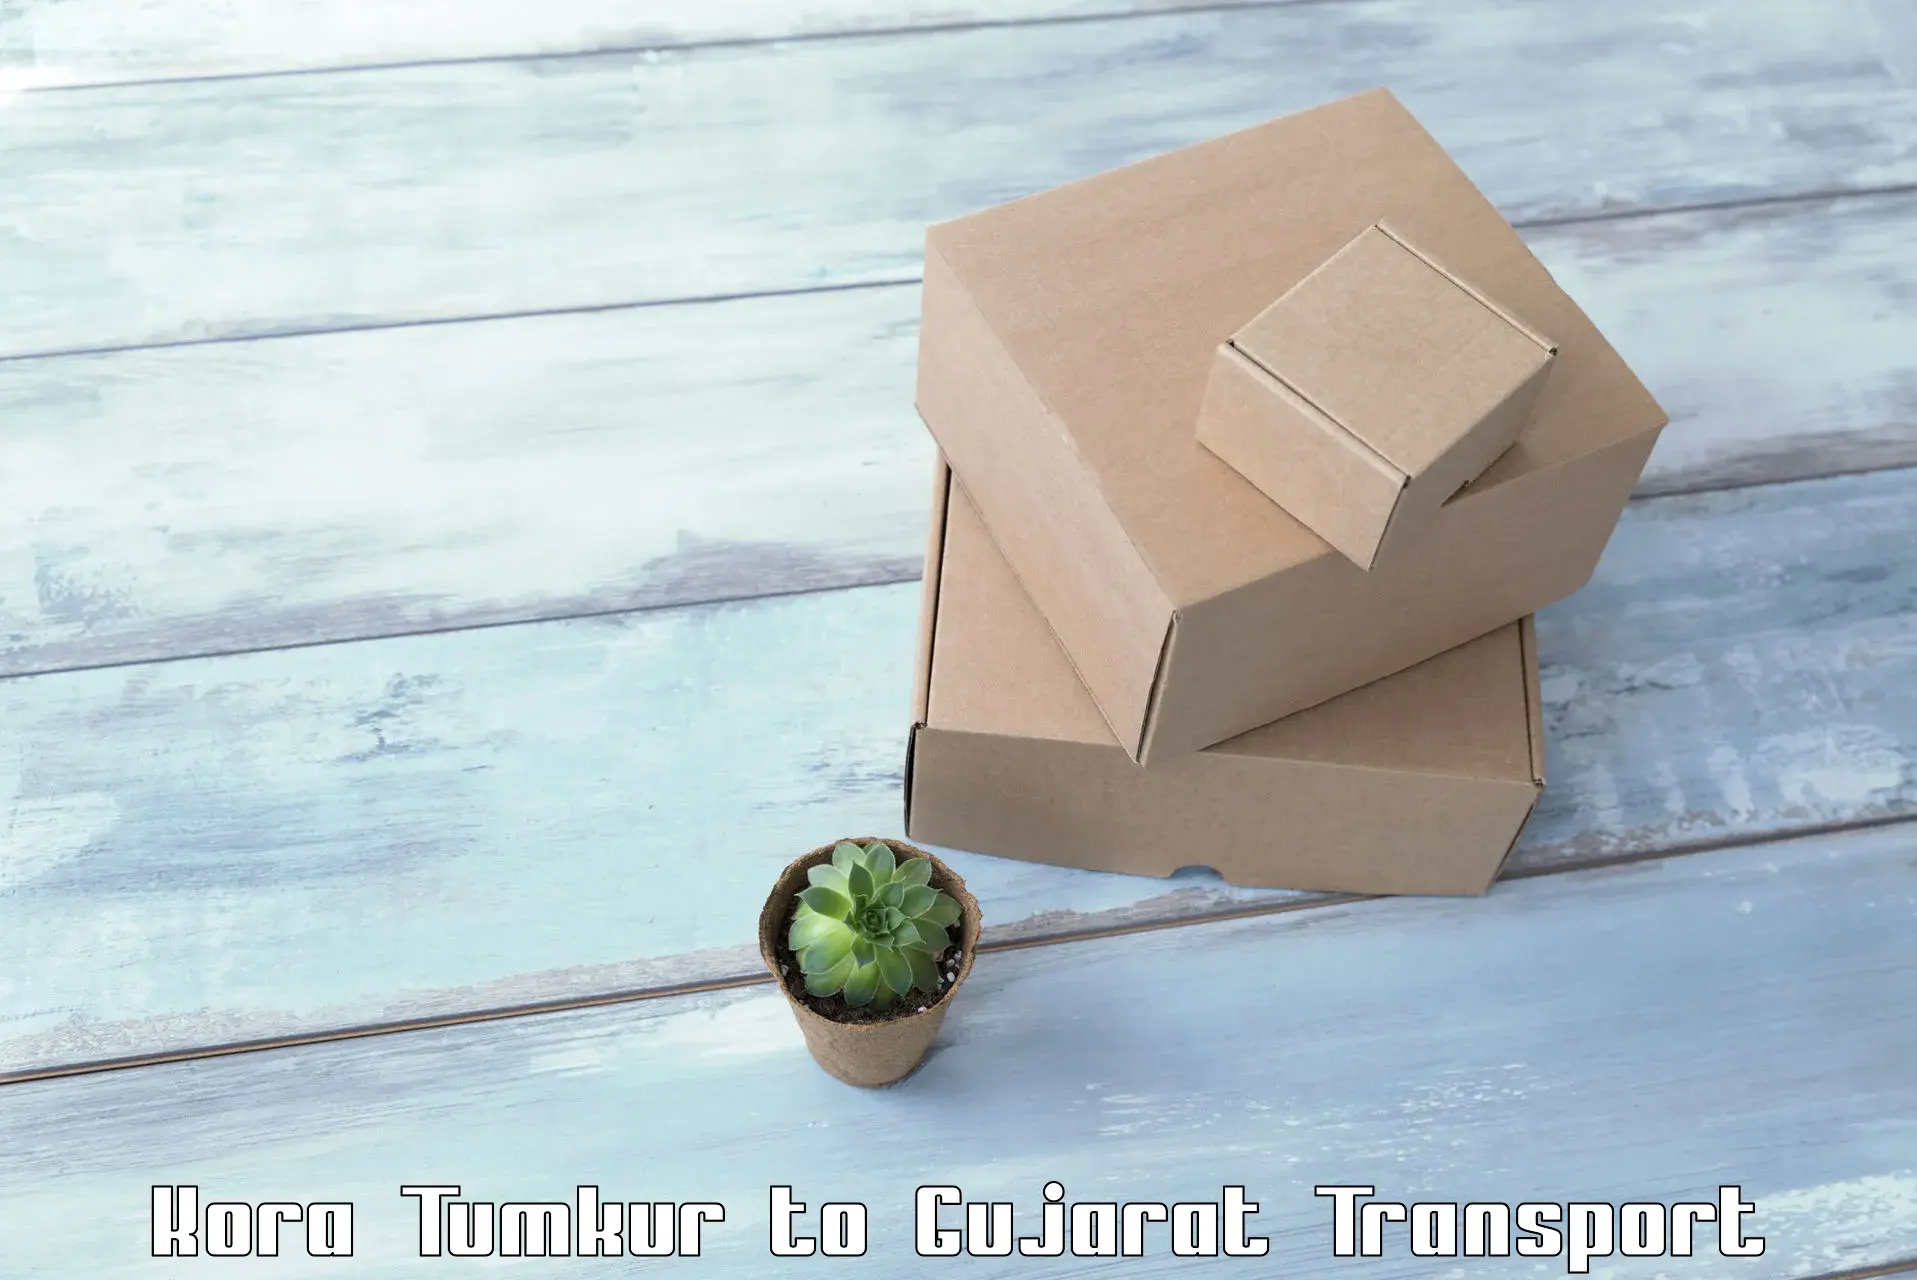 Furniture transport service Kora Tumkur to Balasinor